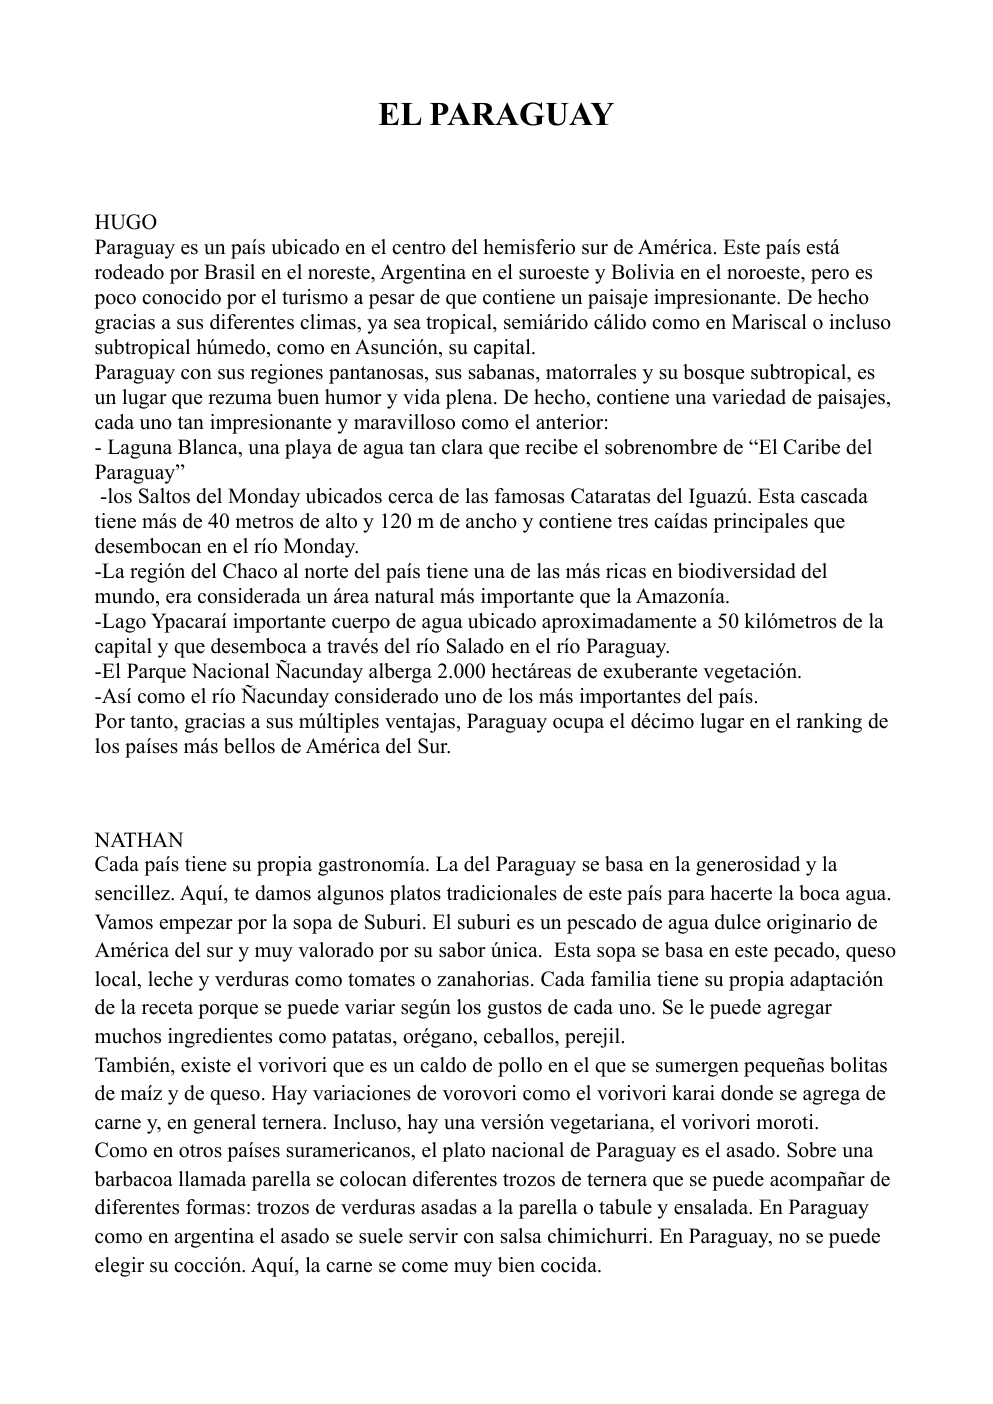 Prévisualisation du document exposé sur le Paraguay en espagnol